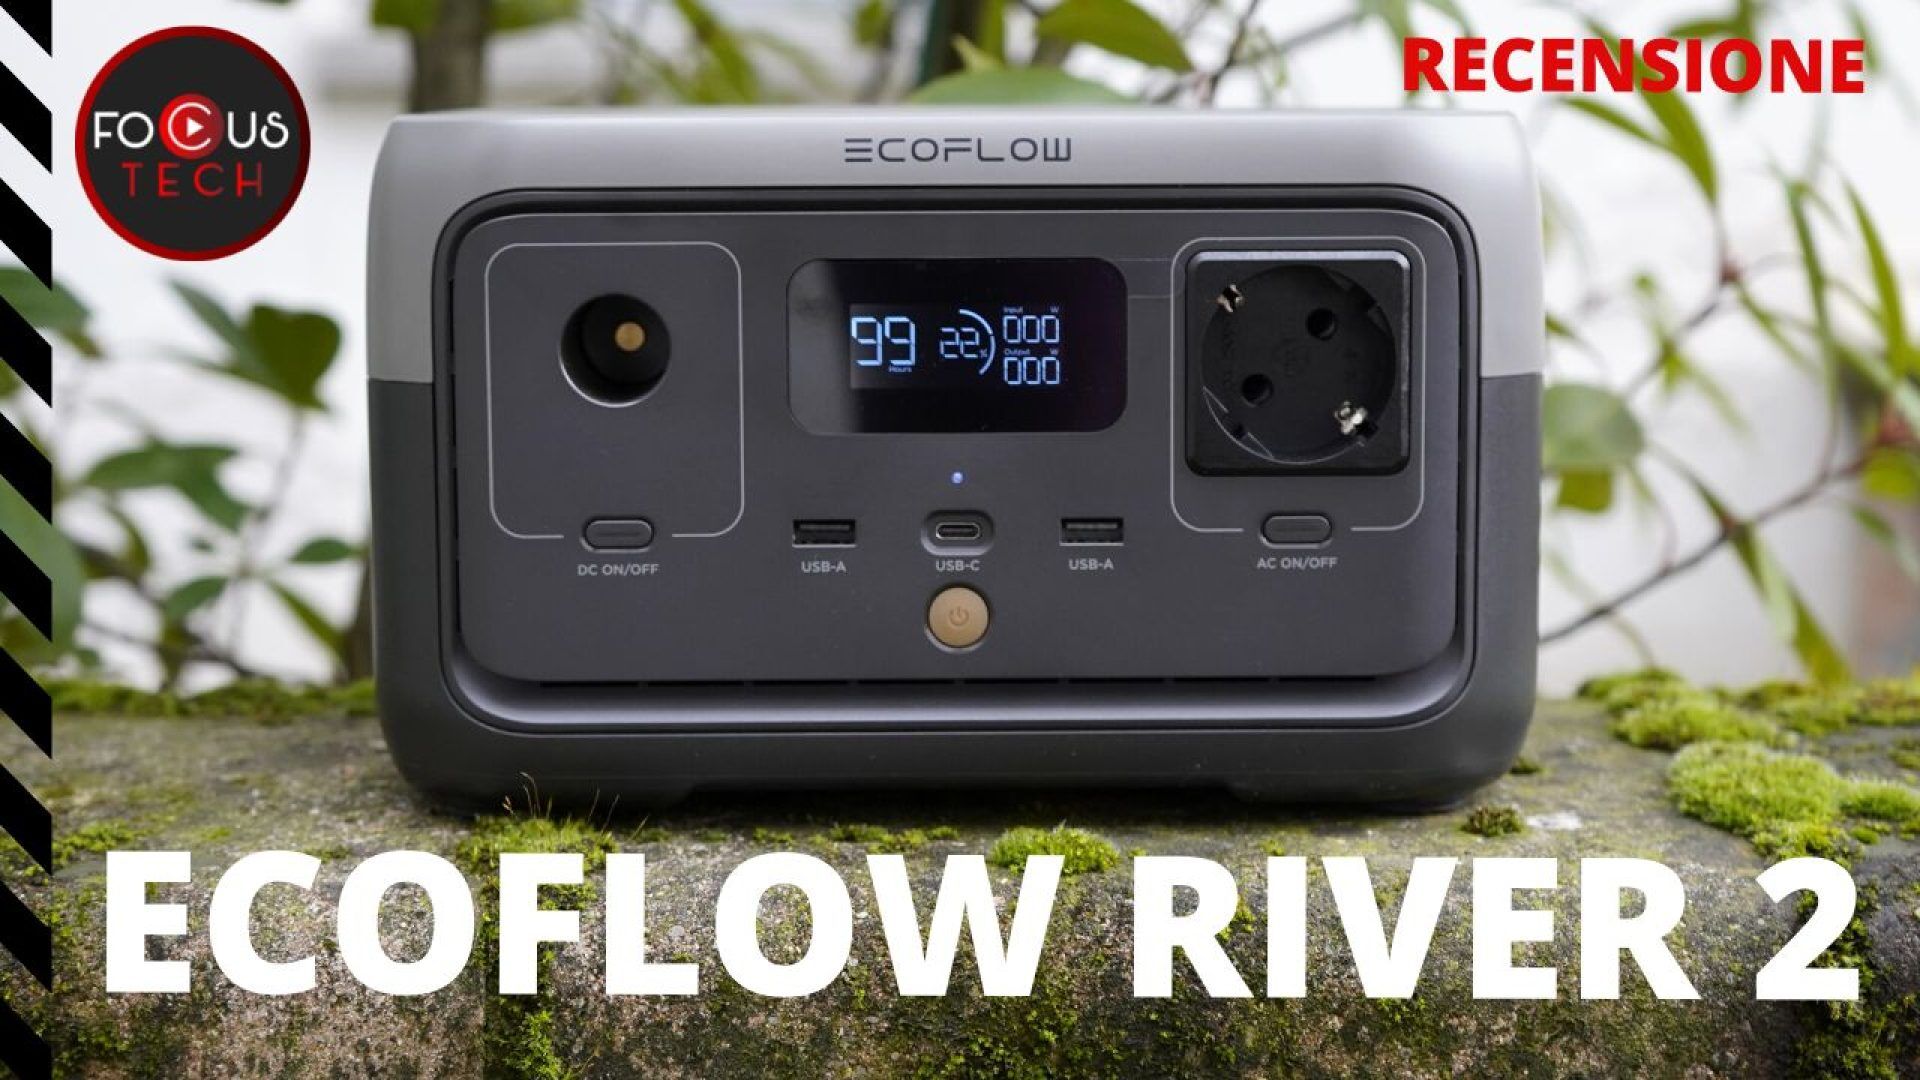 Ecoflow river 2